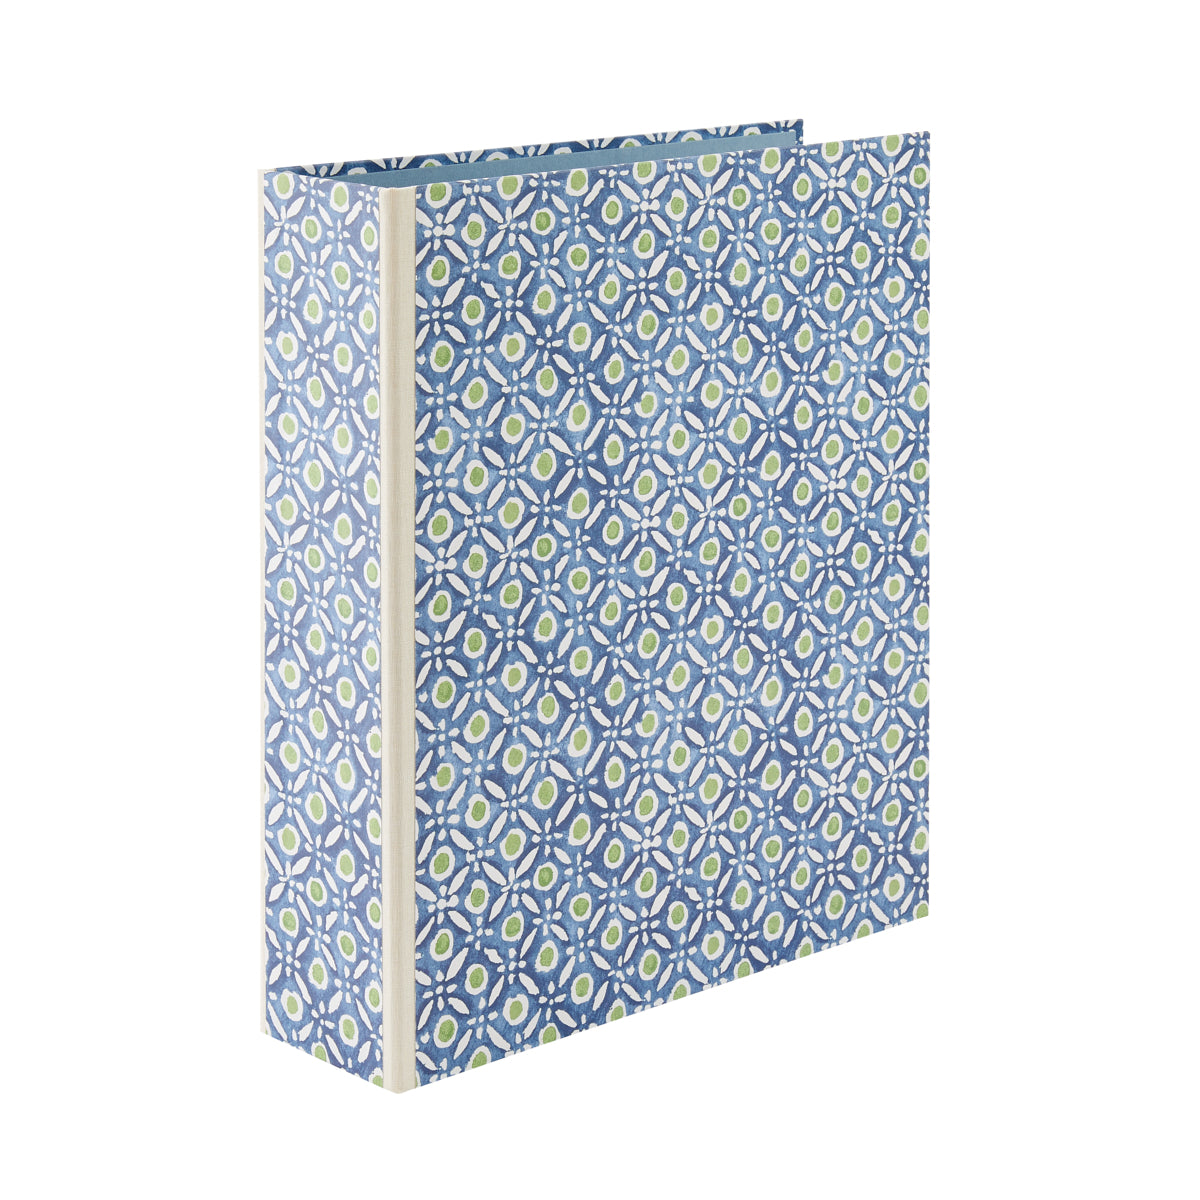 Nina Campbell Lever Arch Folder Batik Dots - Blue/Green